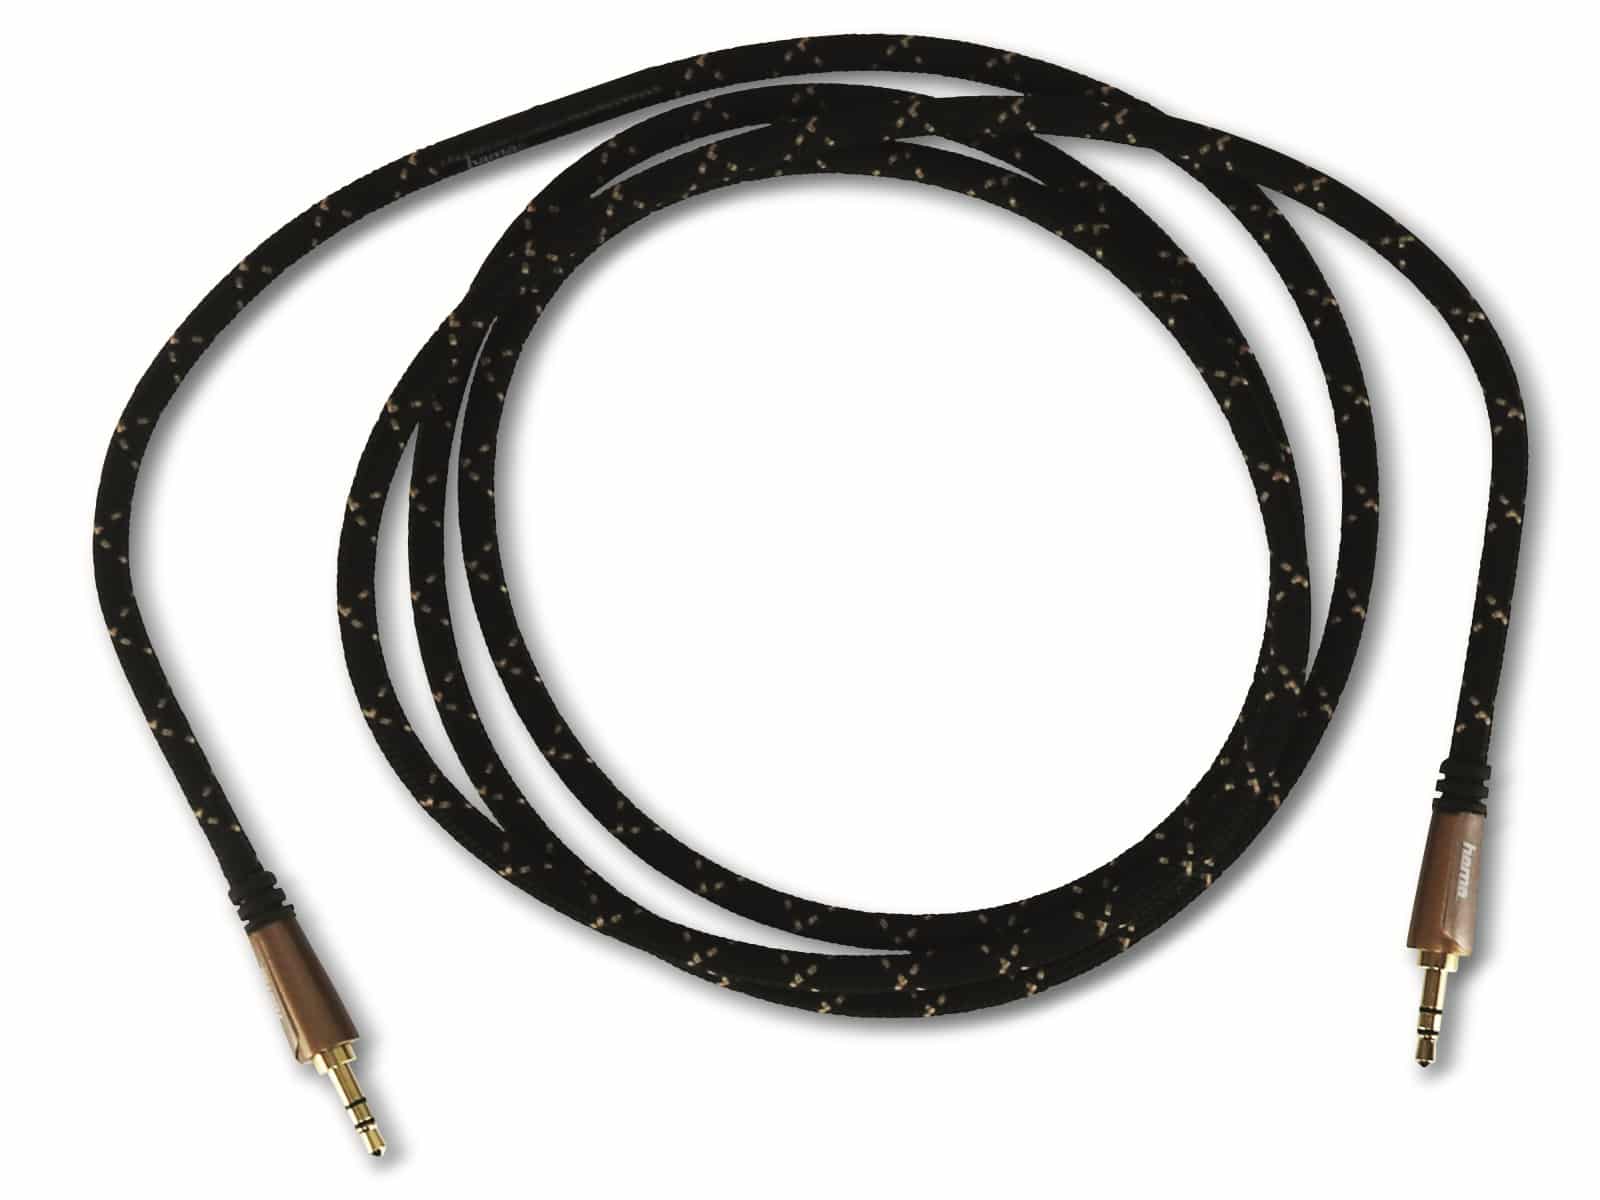 HAMA Audio-Kabel 122327, Klinke auf Klinke, 3,5 mm, 1,5 m